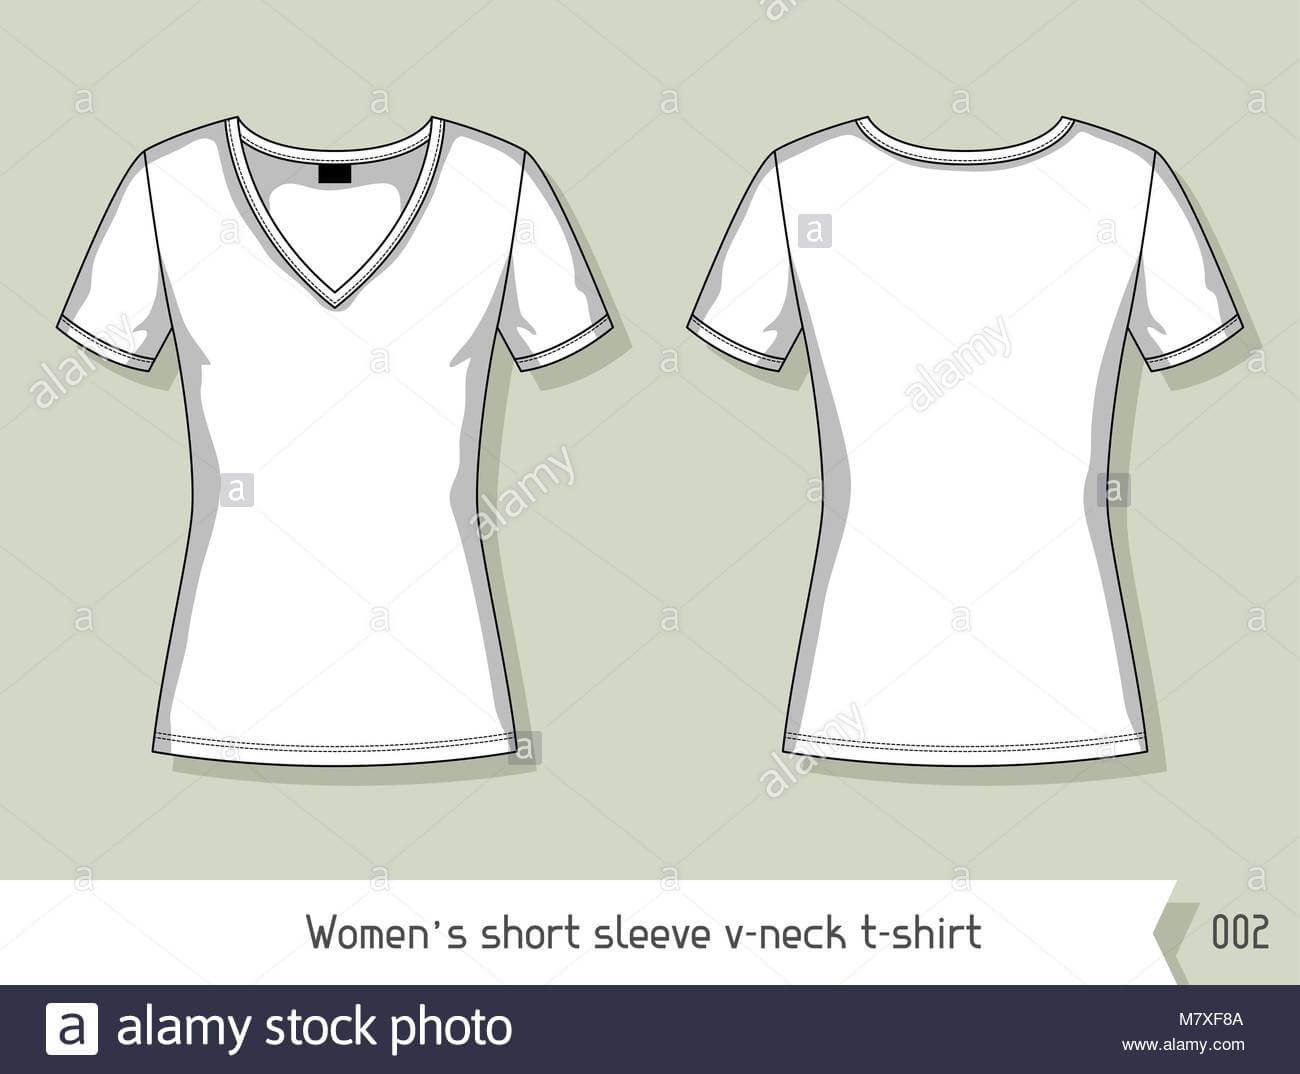 Women Short Sleeve V Neck T Shirt. Template For Design For Blank V Neck T Shirt Template